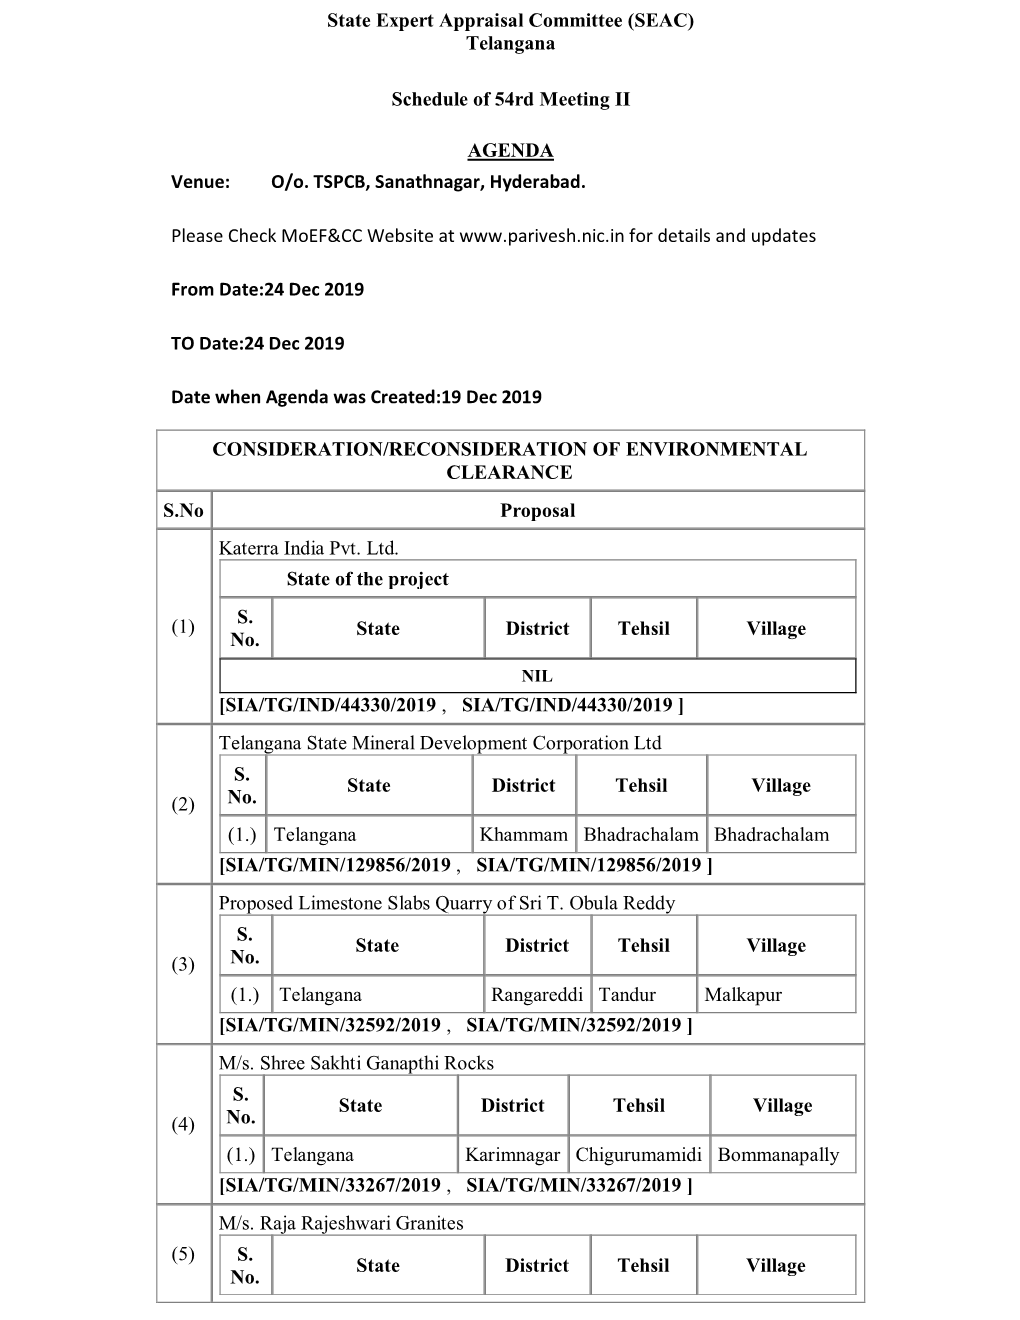 Telangana Schedule of 54Rd Meeting II